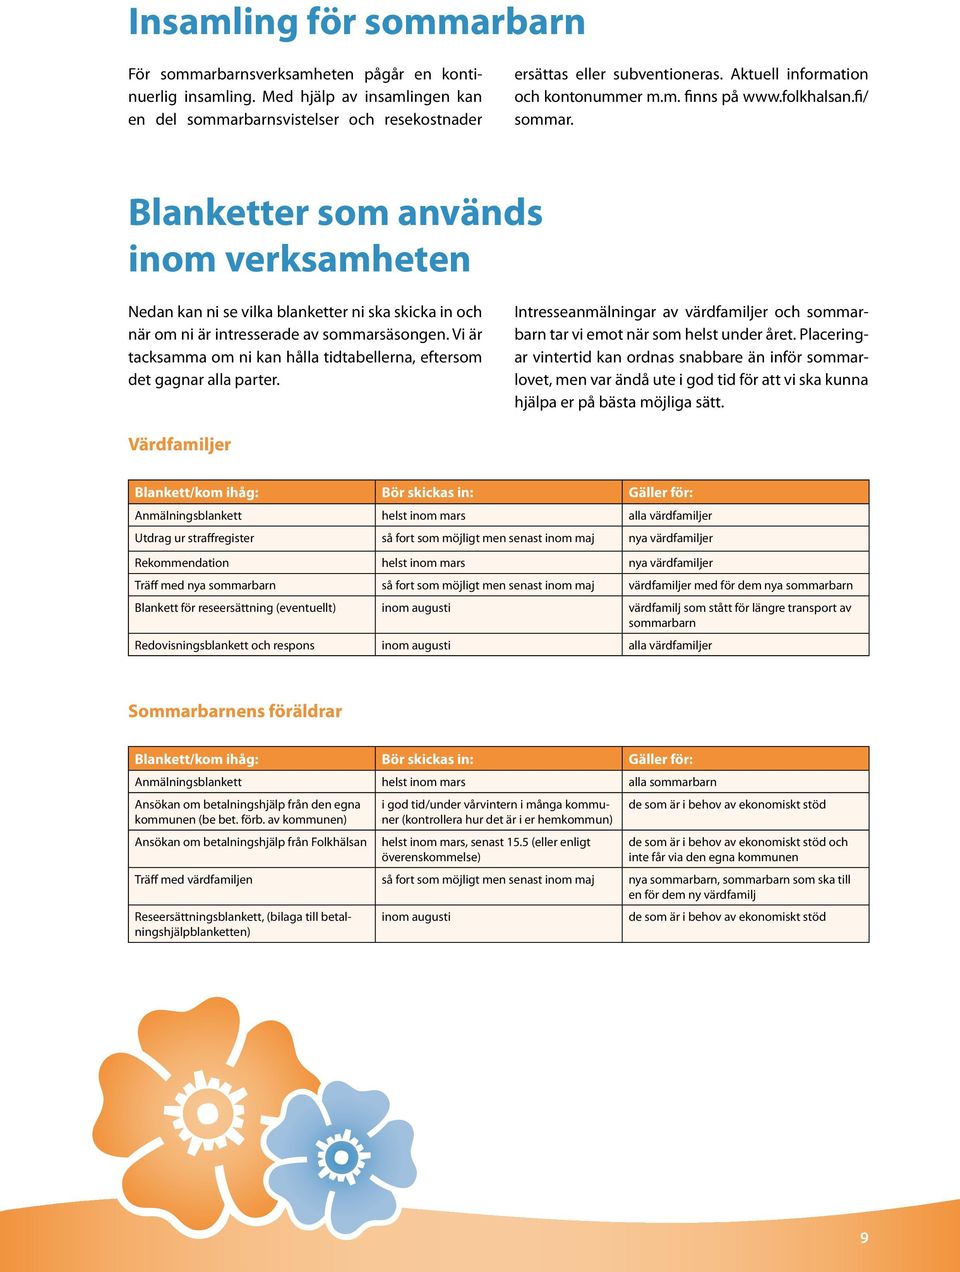 Blanketter som används inom verksamheten Nedan kan ni se vilka blanketter ni ska skicka in och när om ni är intresserade av sommarsäsongen.